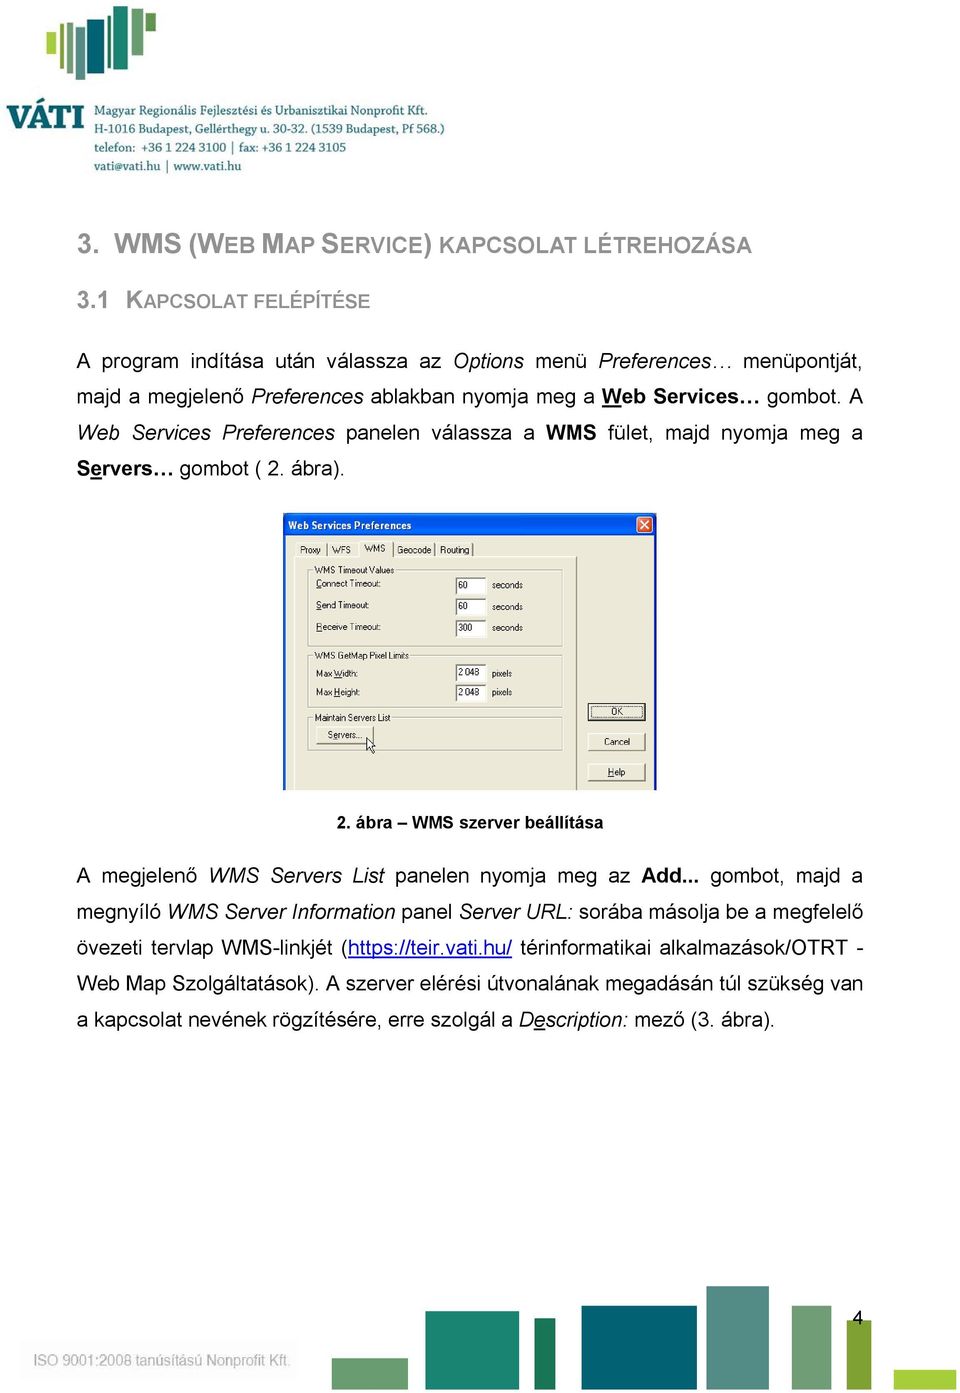 A Web Services Preferences panelen válassza a WMS fület, majd nyomja meg a Servers gombot ( 2. ábra). 2. ábra WMS szerver beállítása A megjelenő WMS Servers List panelen nyomja meg az Add.